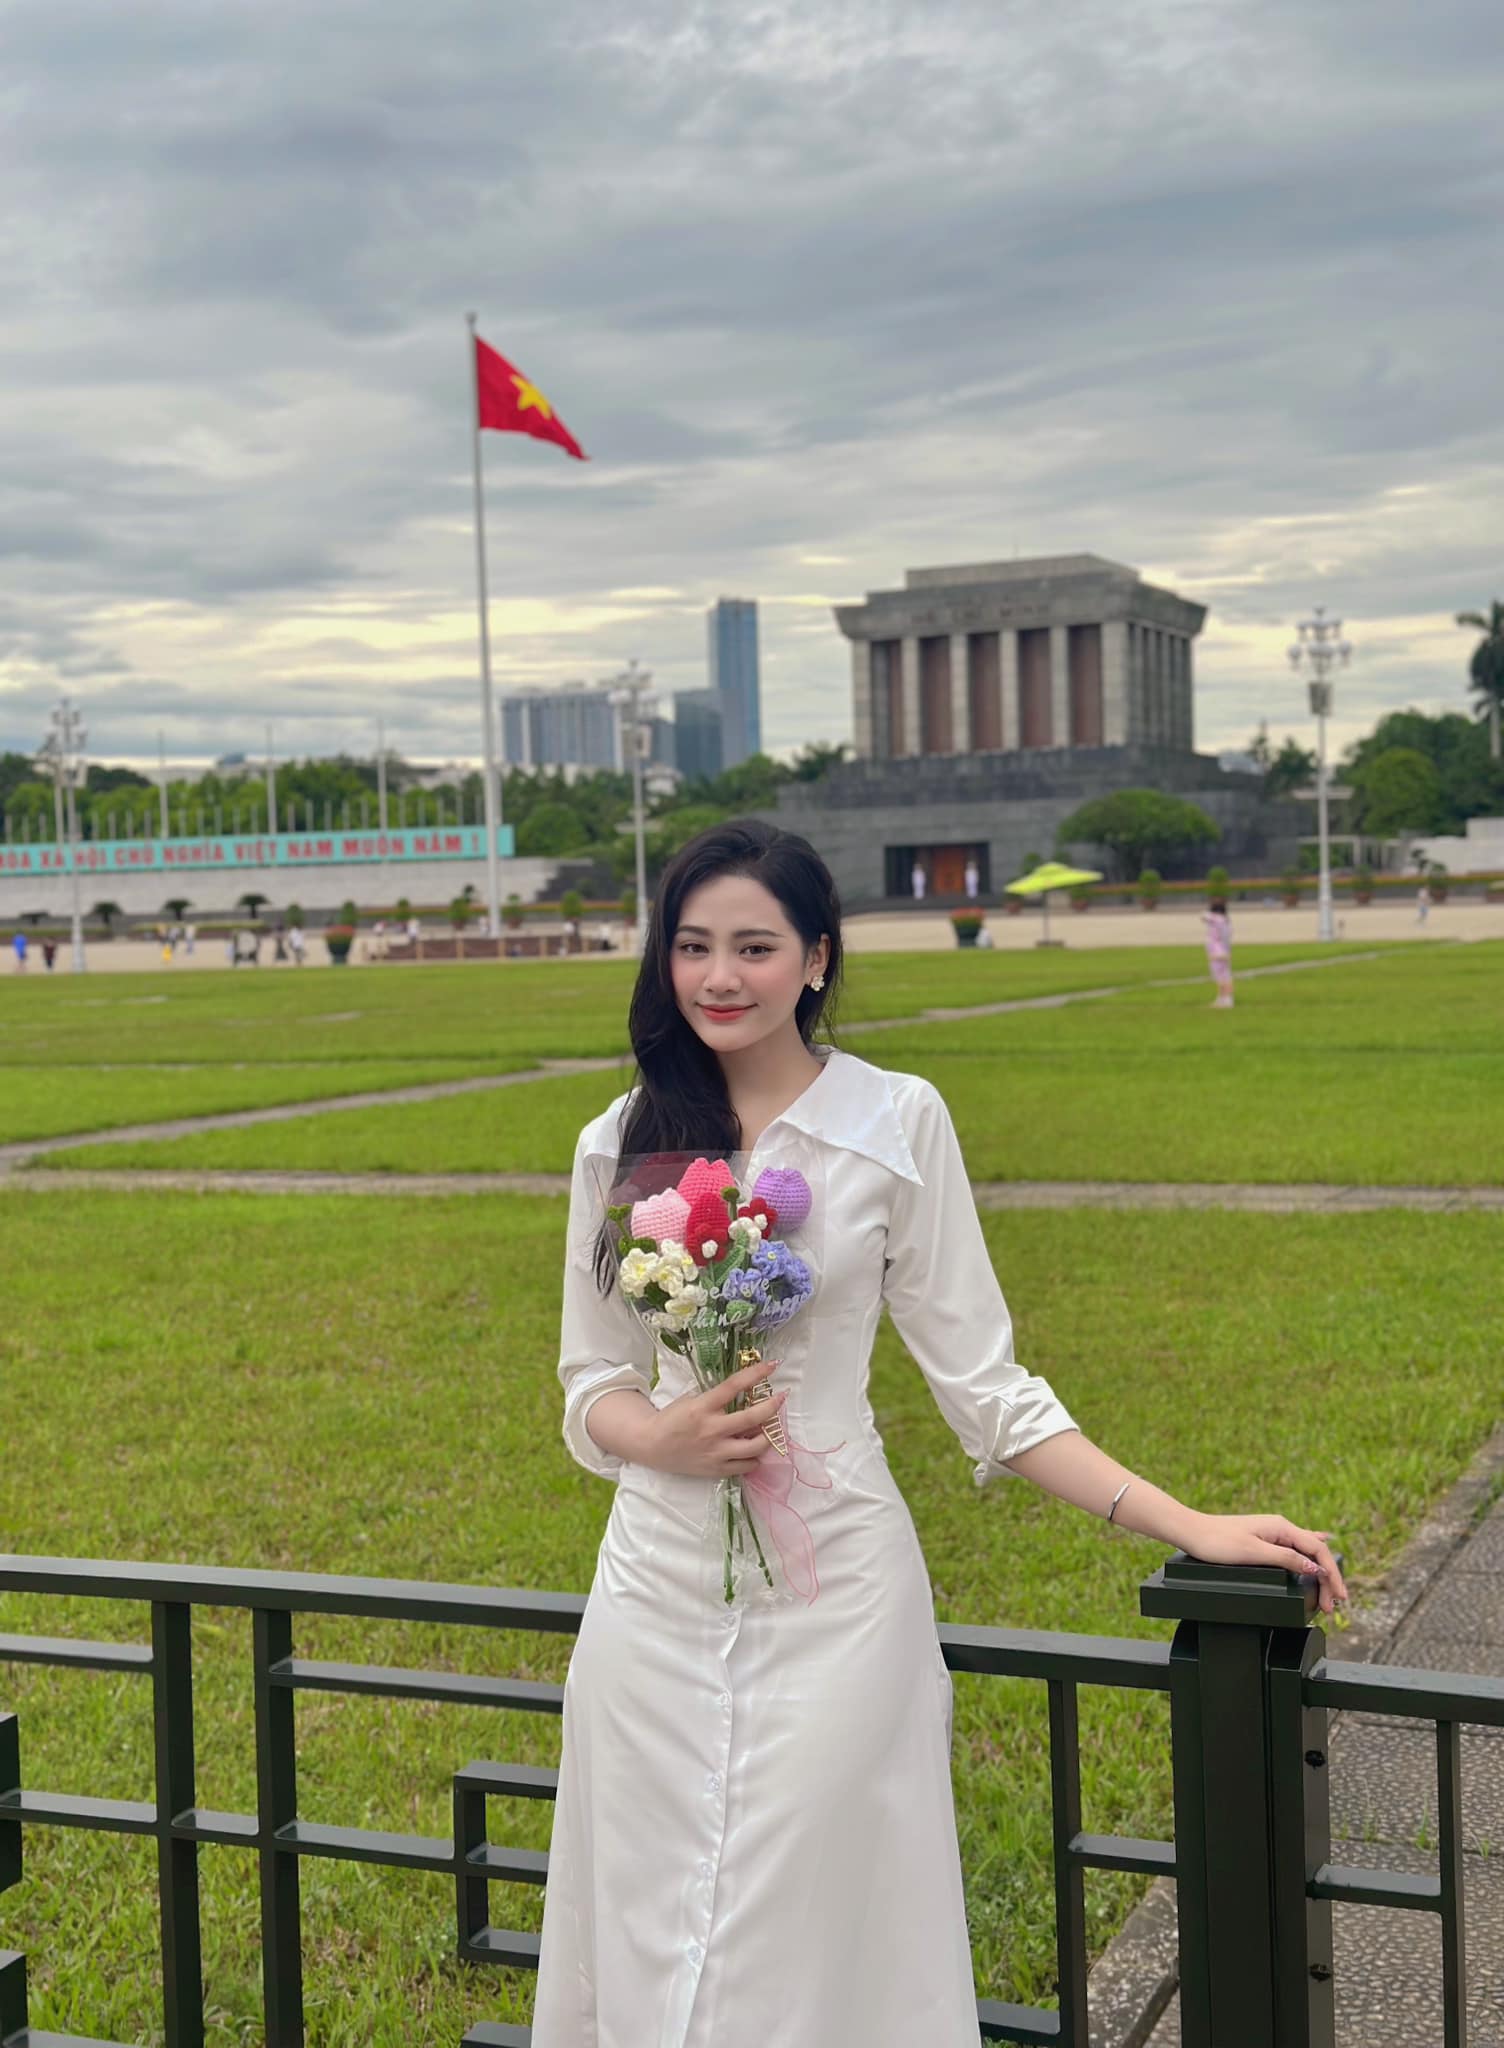 Nhan sắc và cuộc sống của Hoa hậu đặc biệt nhất Việt Nam, trả lại vương miện ngay sau phút đăng quang - Ảnh 4.